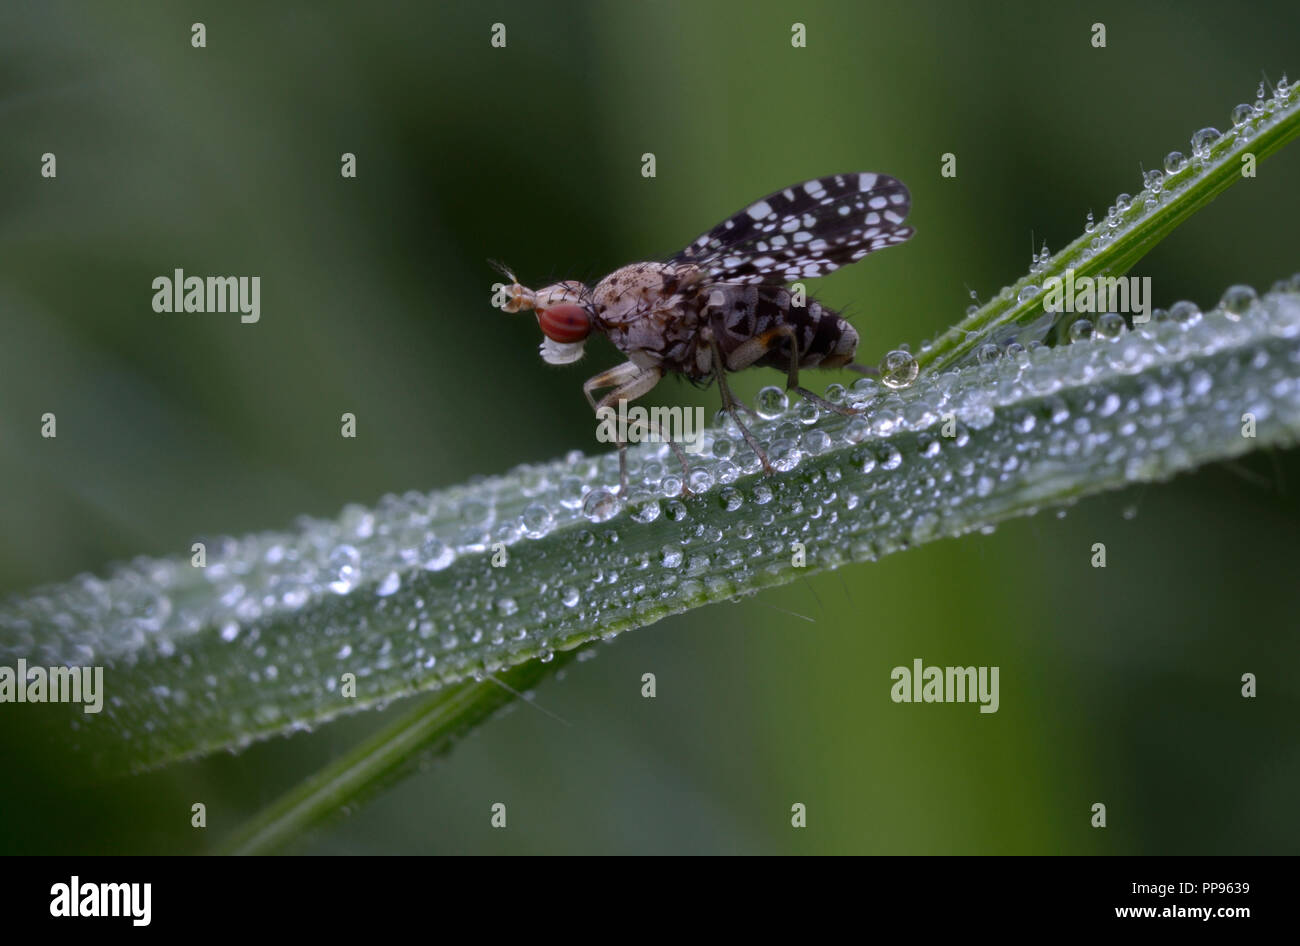 Piccola mosca della frutta, Drosophilidae, seduto su un gambo di erba bagnato di rugiada di fronte a uno sfondo sfocato. Lugi, Carpazi, Ucraina, Giugno 2018 Foto Stock